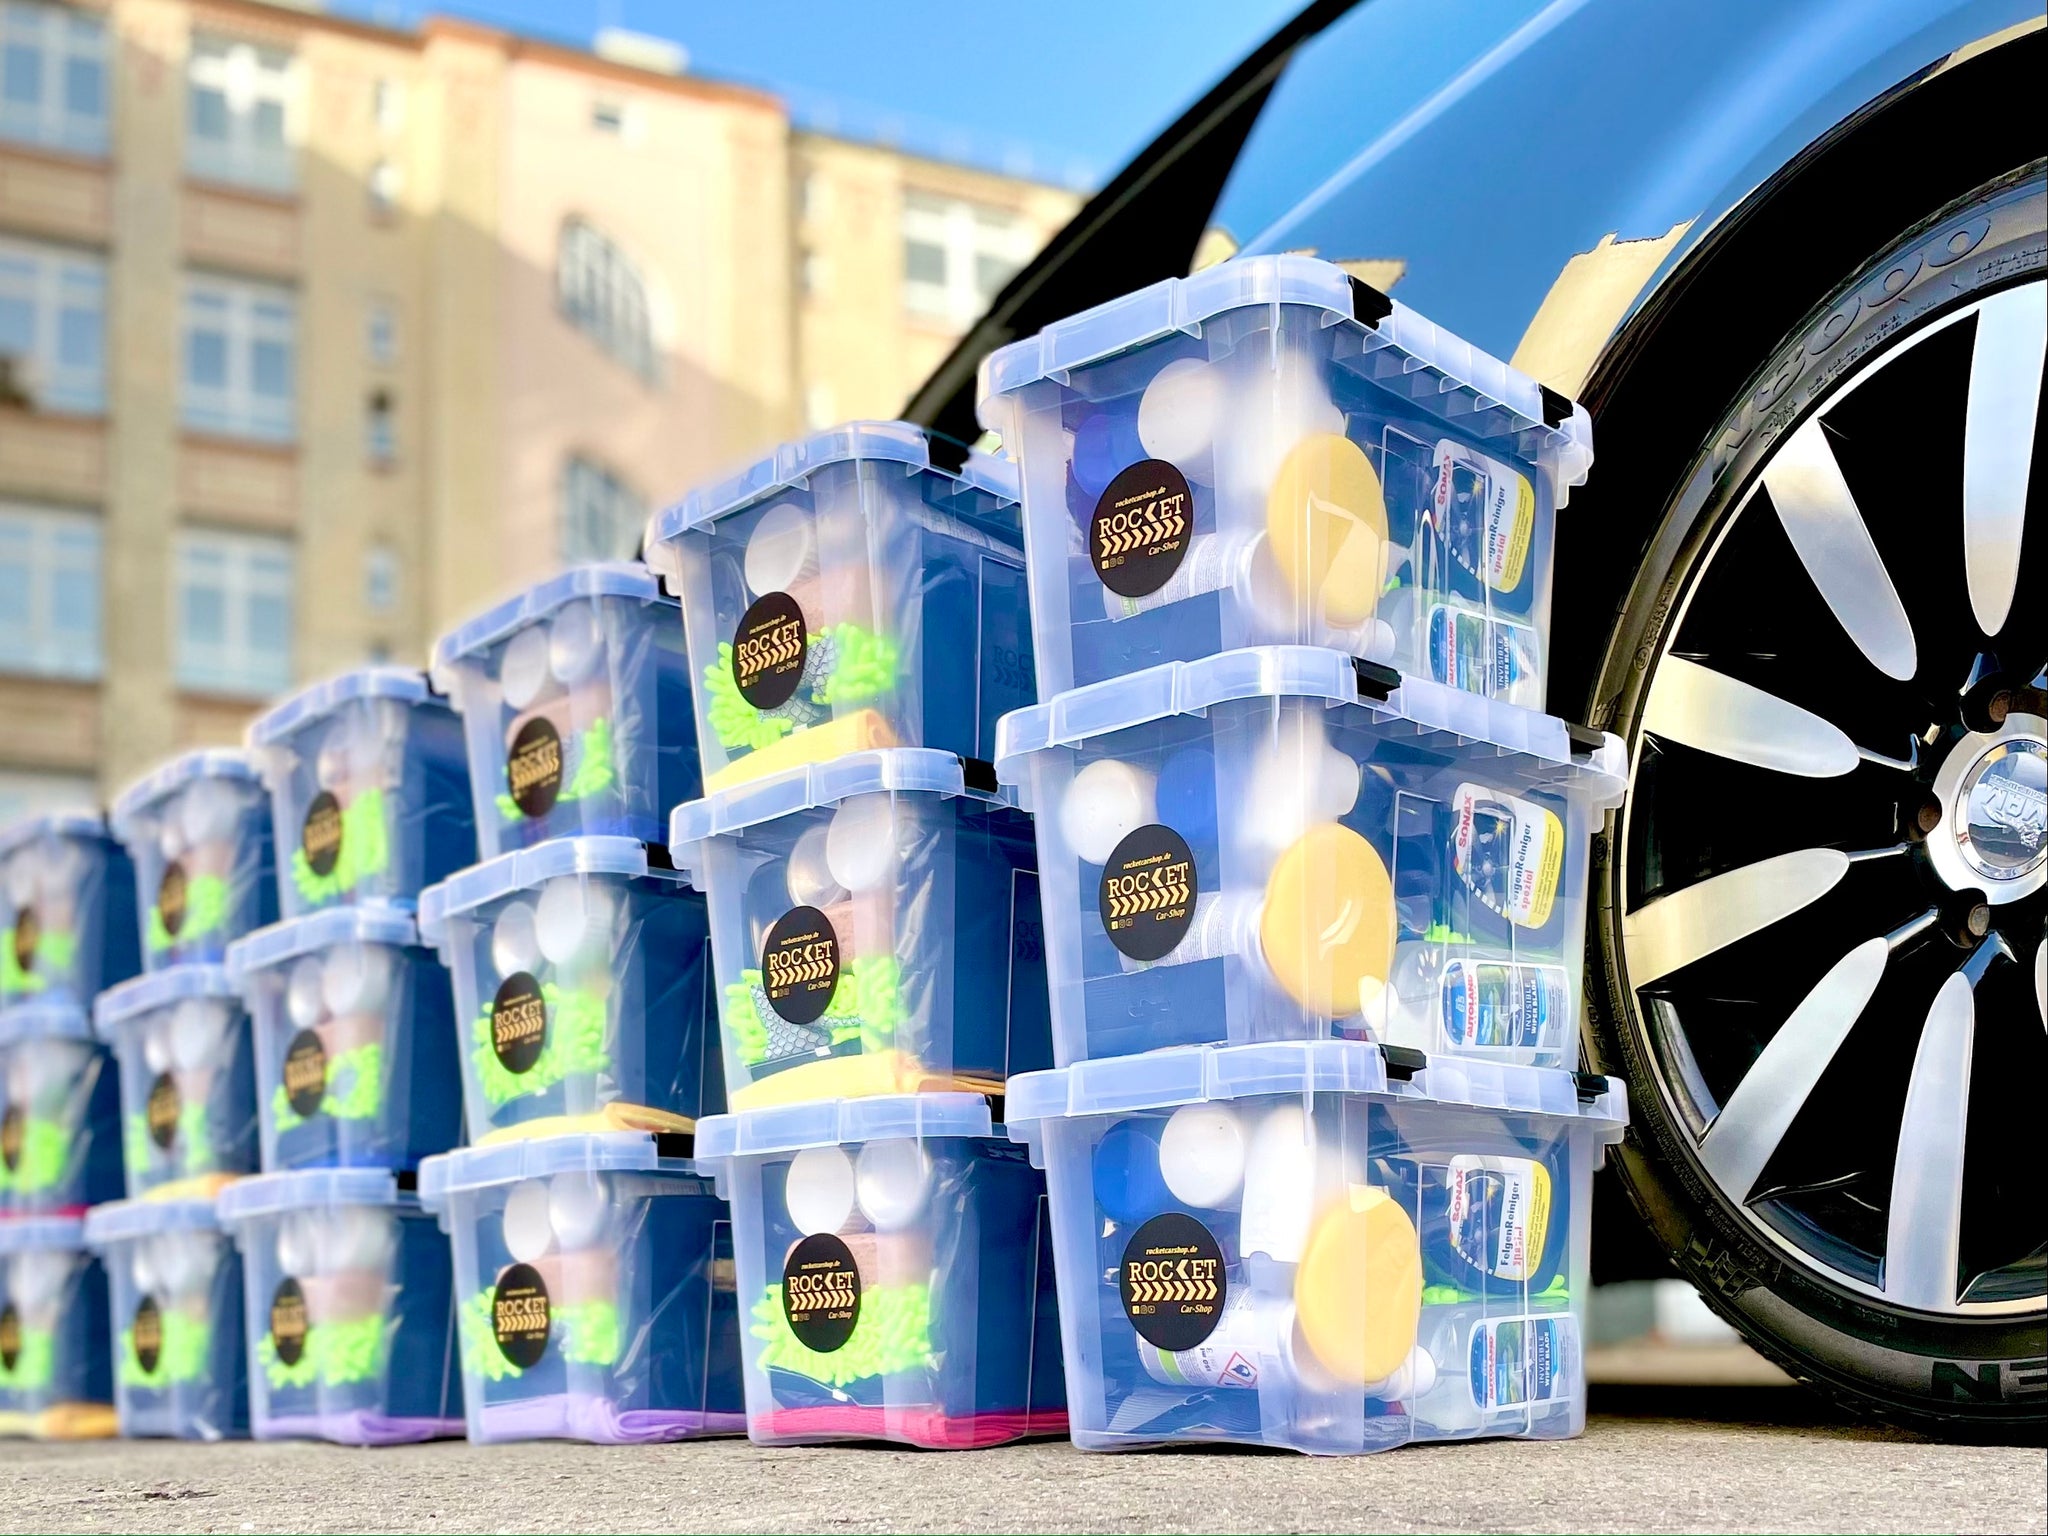 Yunnker Reinigungsbürsten-Set 20 Pcs Autopflege Set Waschset für Auto  Reinigung, (20-tlg), Auto Reinigung Innenraum und Außen